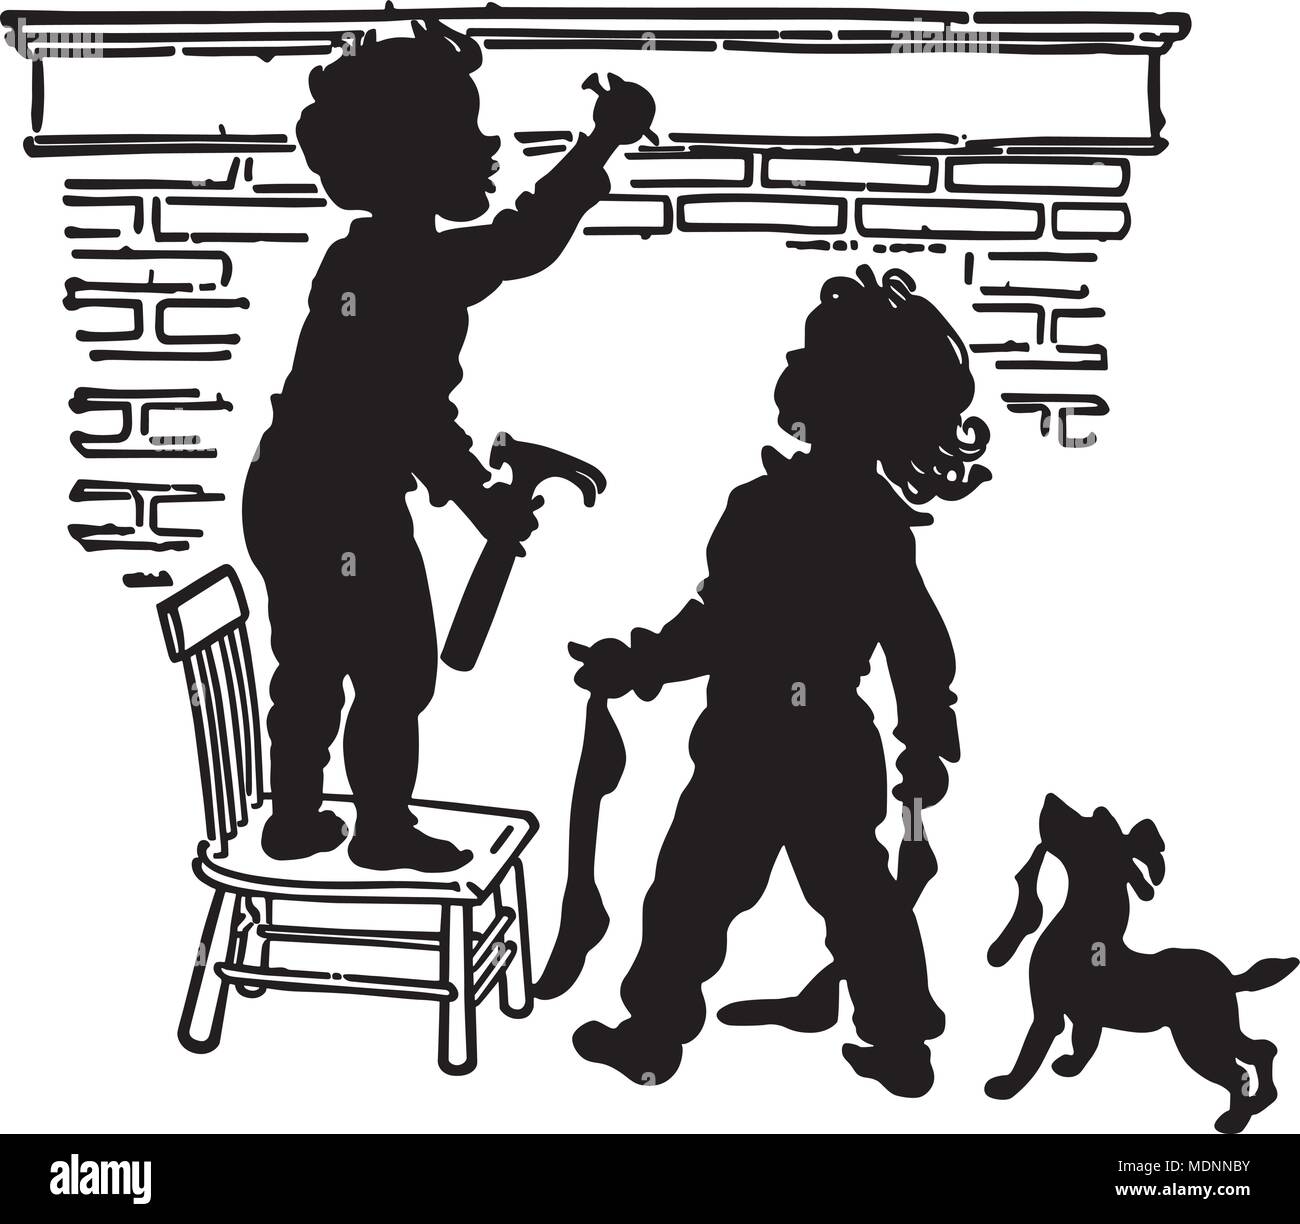 Kinder hängen Strümpfe - Retro Clipart Illustration Stock Vektor